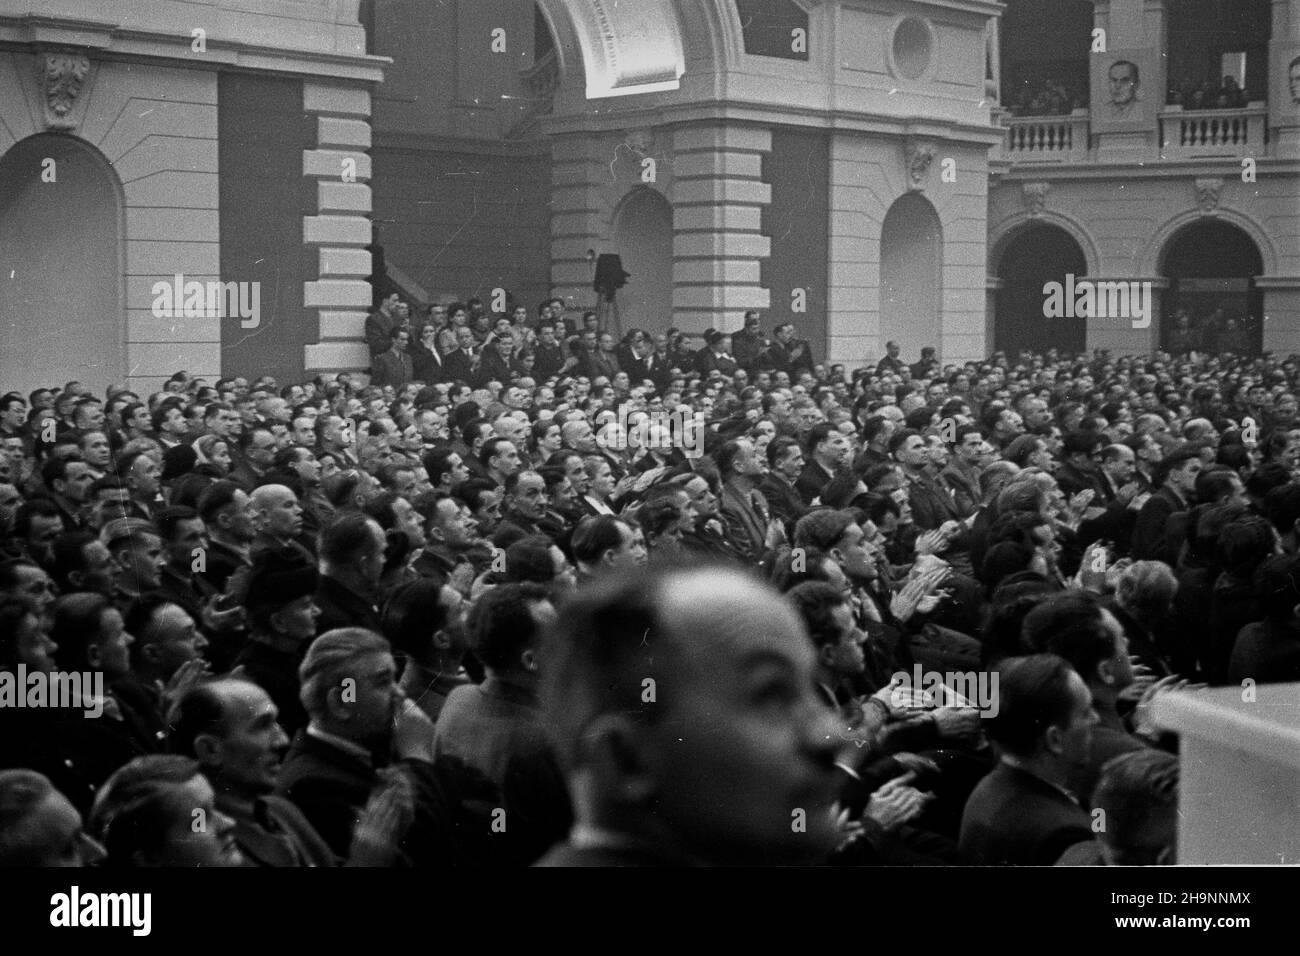 Warszawa, 1948-12-15. Kongres Zjednoczeniowy PPR (Polska Partia Robotnicza) i PPS (Polska Partia Socjalistyczna), 15-21 XII, w auli Politechniki Warszawskiej. I Zjazd PZPR (Polska Zjednoczona Partia Robotnicza). Nz. uczestnicy kongresu podczas uroczystej inauguracji.  ka  PAP      Warsaw, Dec. 15, 1948. The Unification Congress of the Polish Worker Party (PPR) and the Polish Socialist Party (PPS) held debates at Warsaw Technical University on December 15-21. The 1st Congress of the Polish United Worker Party (PZPR). Pictured: participants in the congress during the inauguration ceremony.  mw Stock Photo